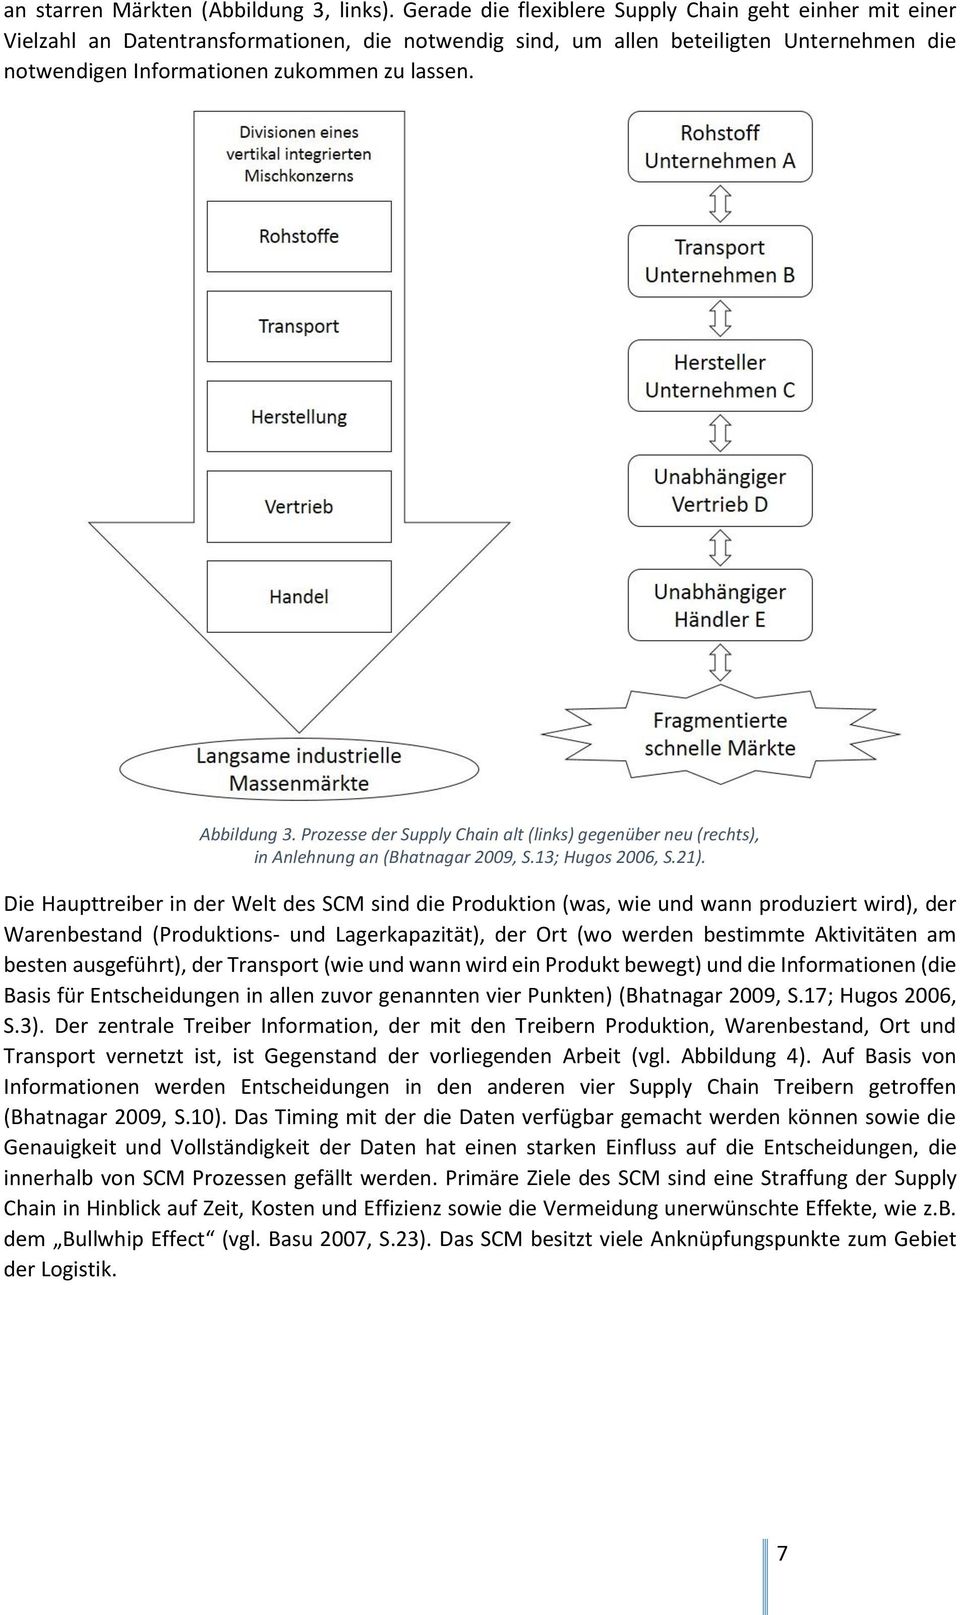 Abbildung 3. Prozesse der Supply Chain alt (links) gegenüber neu (rechts), in Anlehnung an (Bhatnagar 2009, S.13; Hugos 2006, S.21).